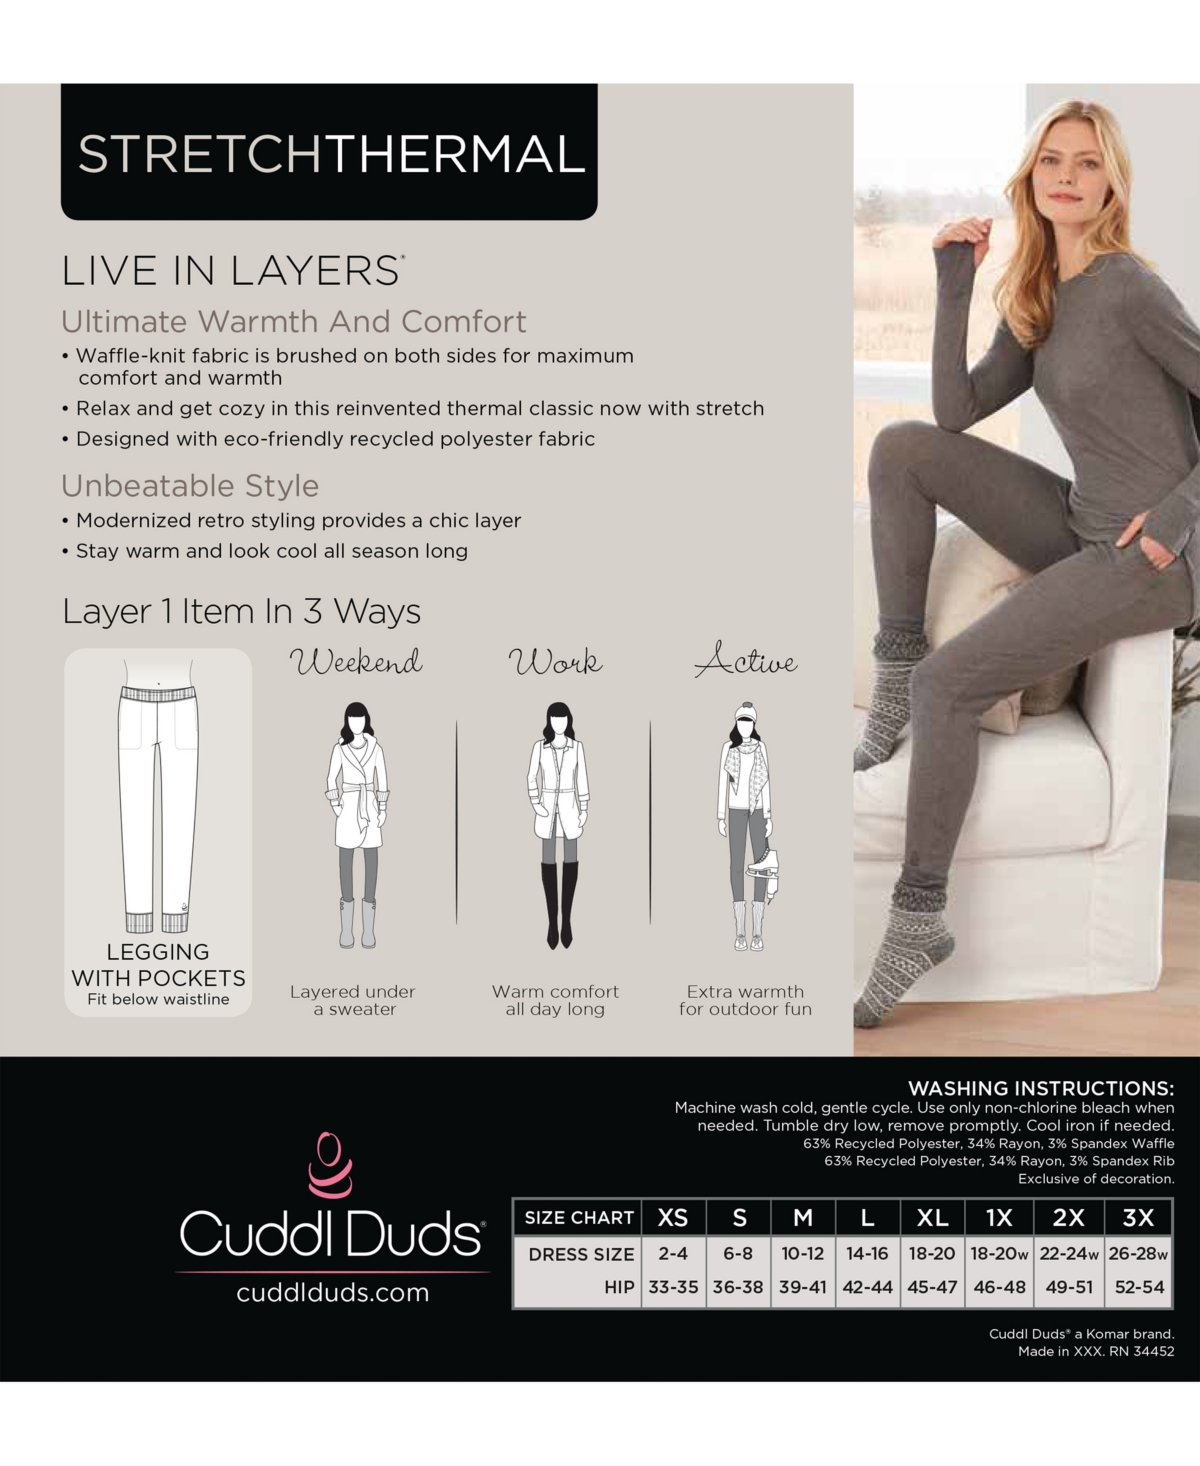 Cuddl Duds Plus Softwear with Stretch High-Waist Leggings